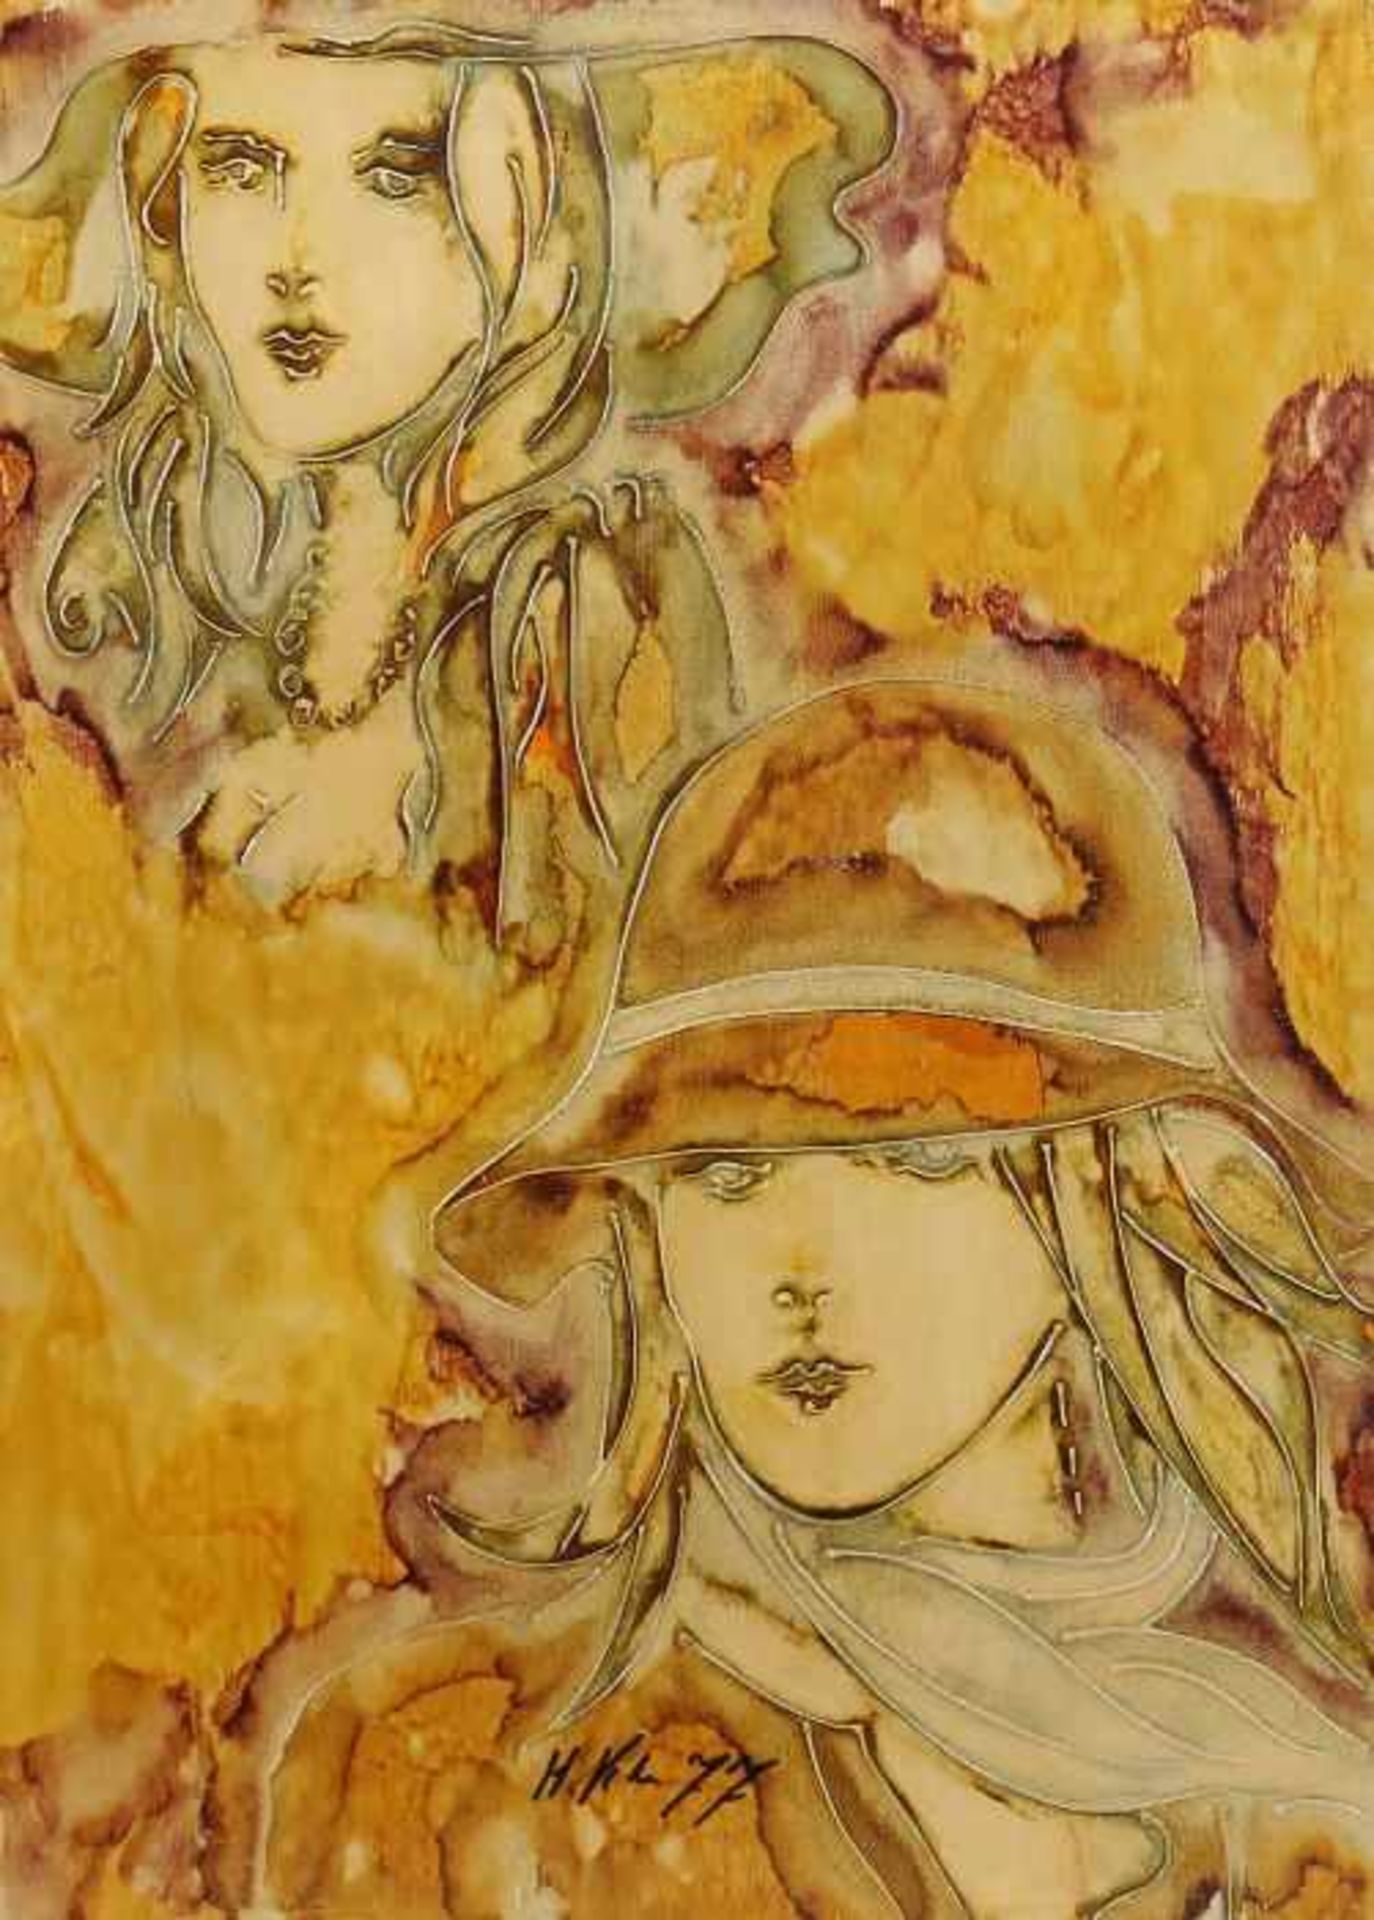 Maler des 20. Jh."Zwei Mädchen", stilisierte Darstellung der zwei Frauenköpfe mit Hut in Gelb,